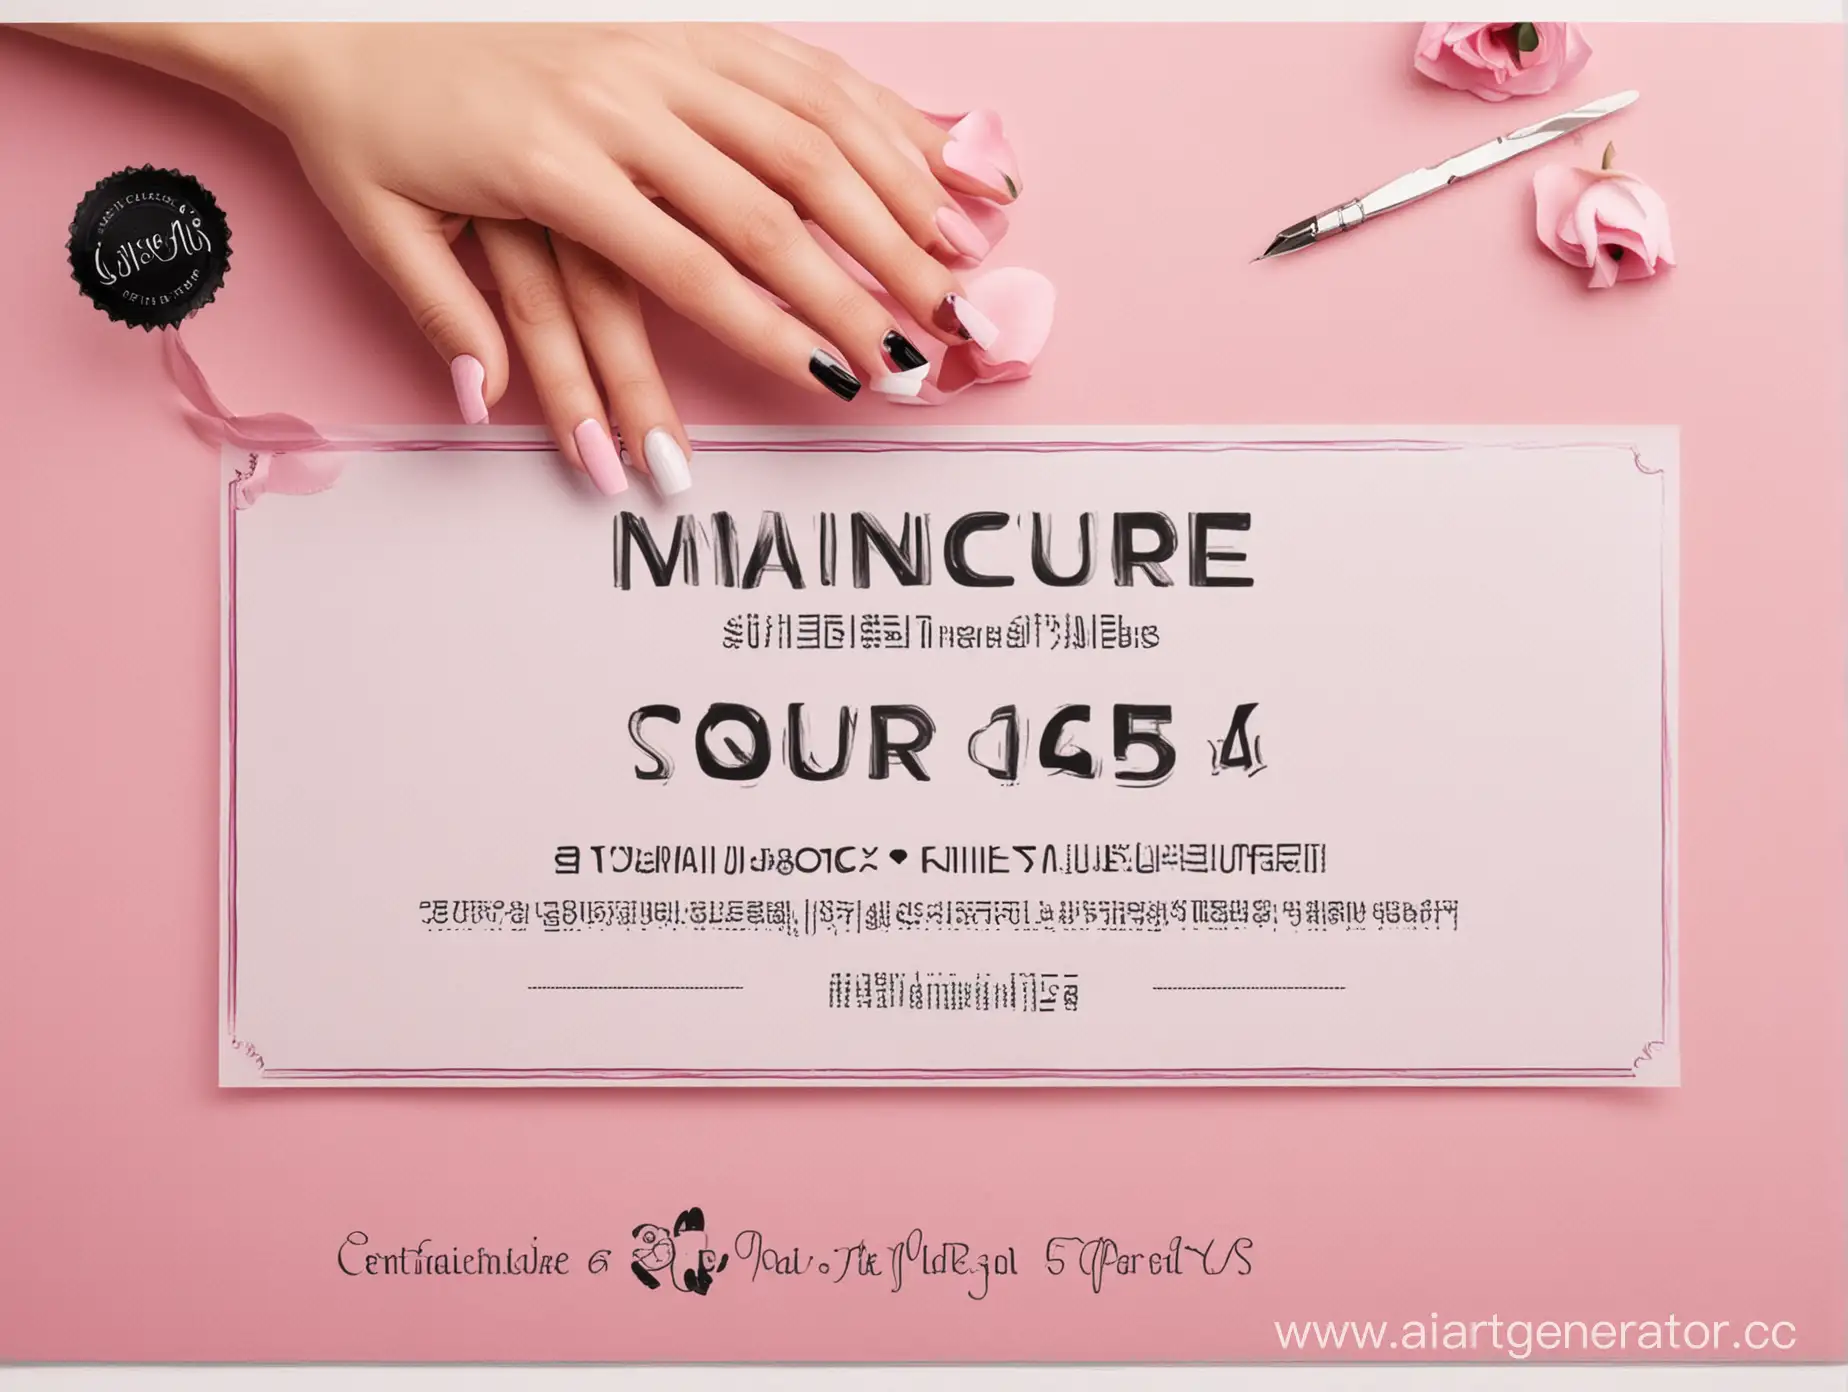 сертификат по маникюру, справа изображение ногтей слева текст, цвета черный белый розовый